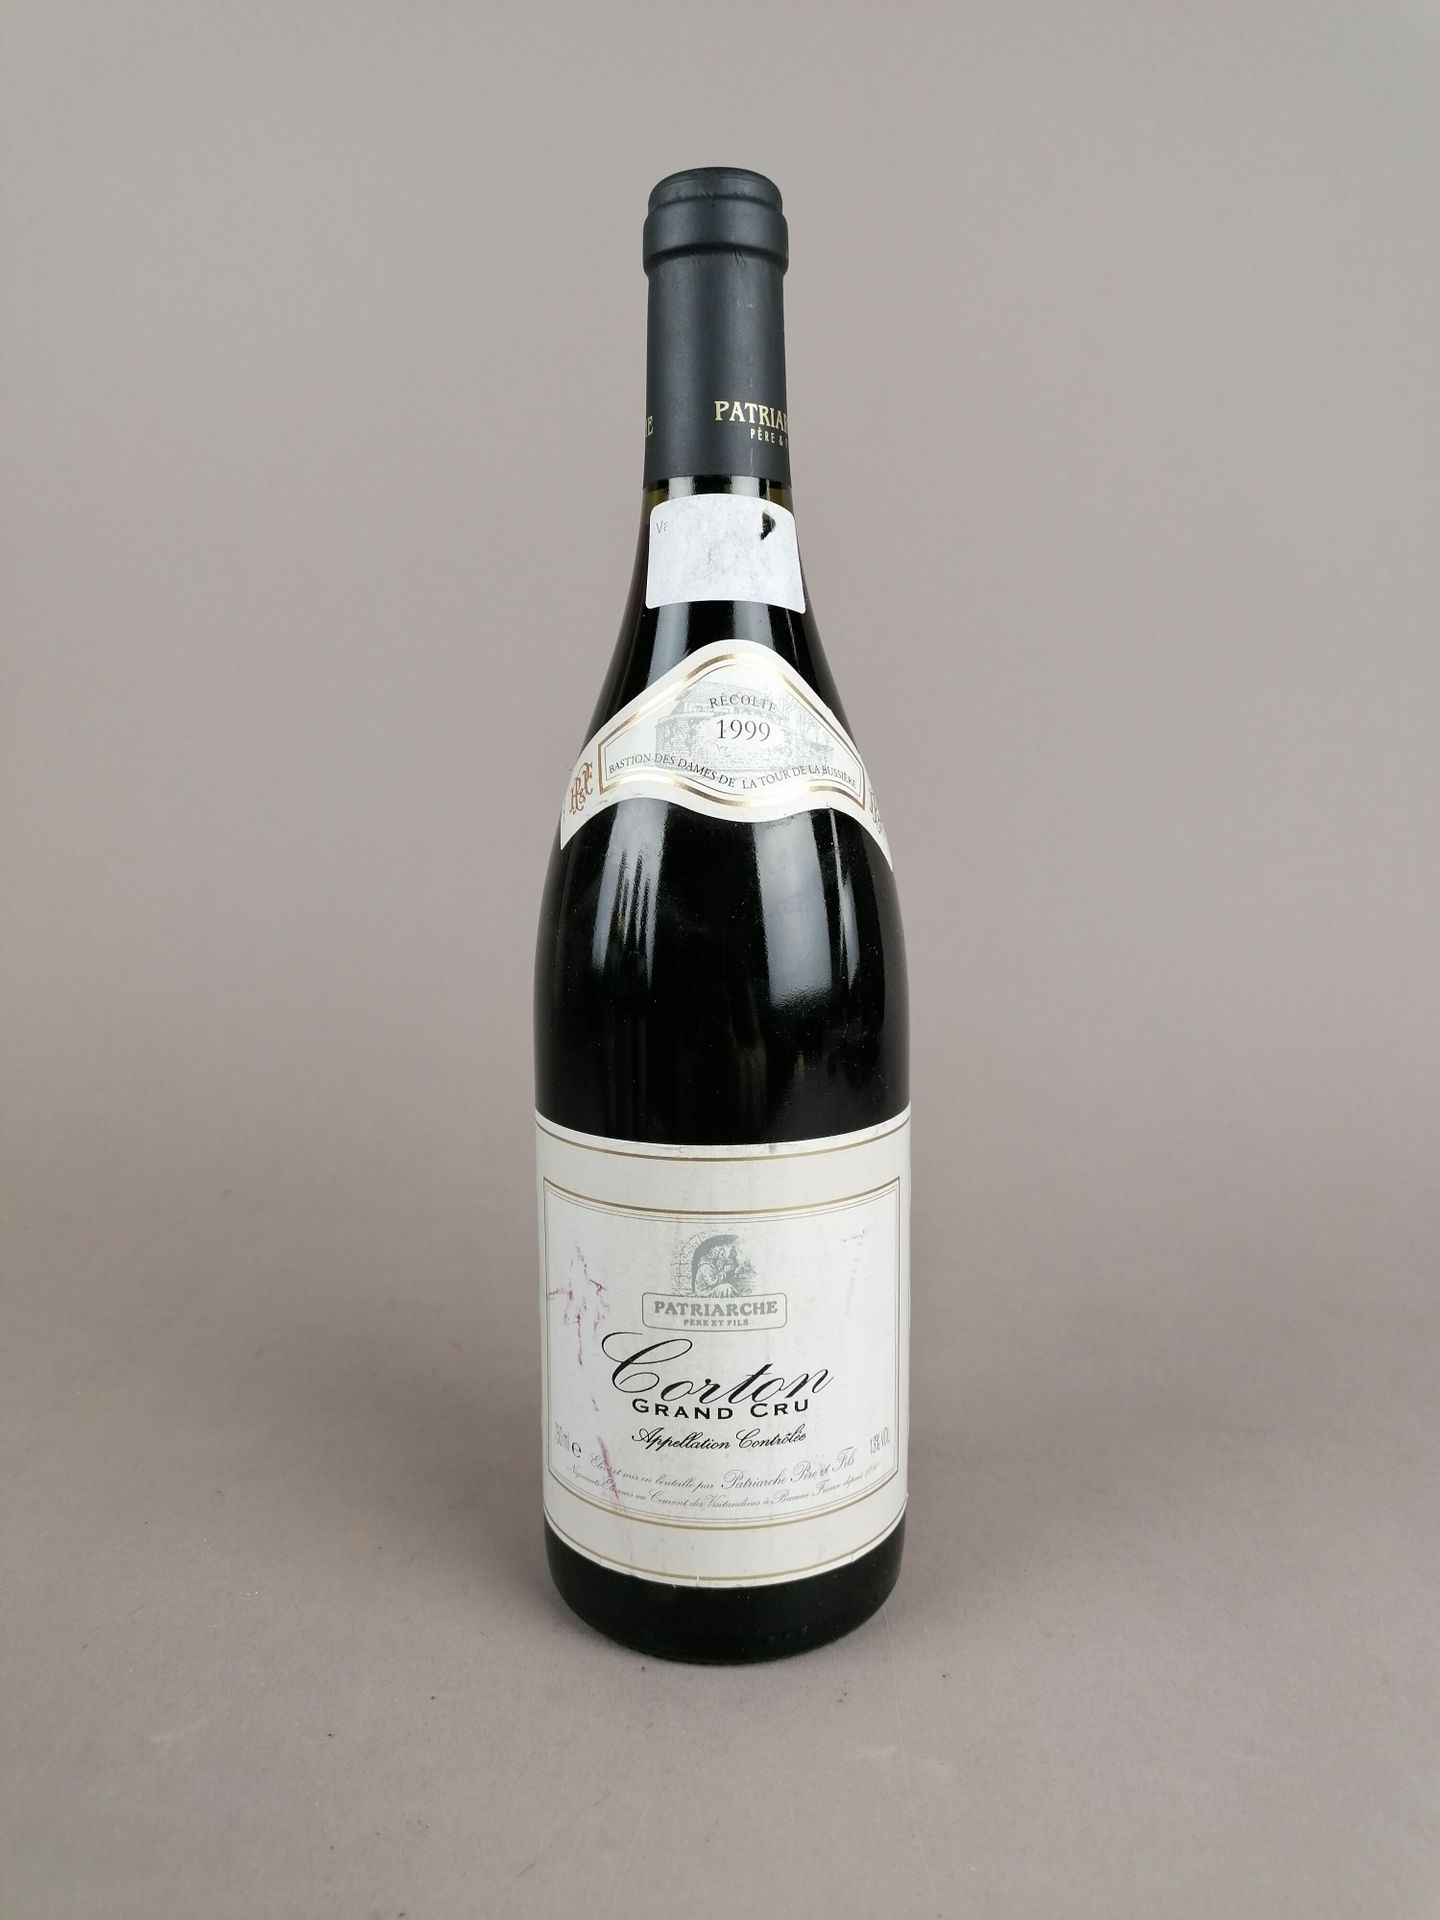 Null 1 bottle of Corton 1999 Patriache